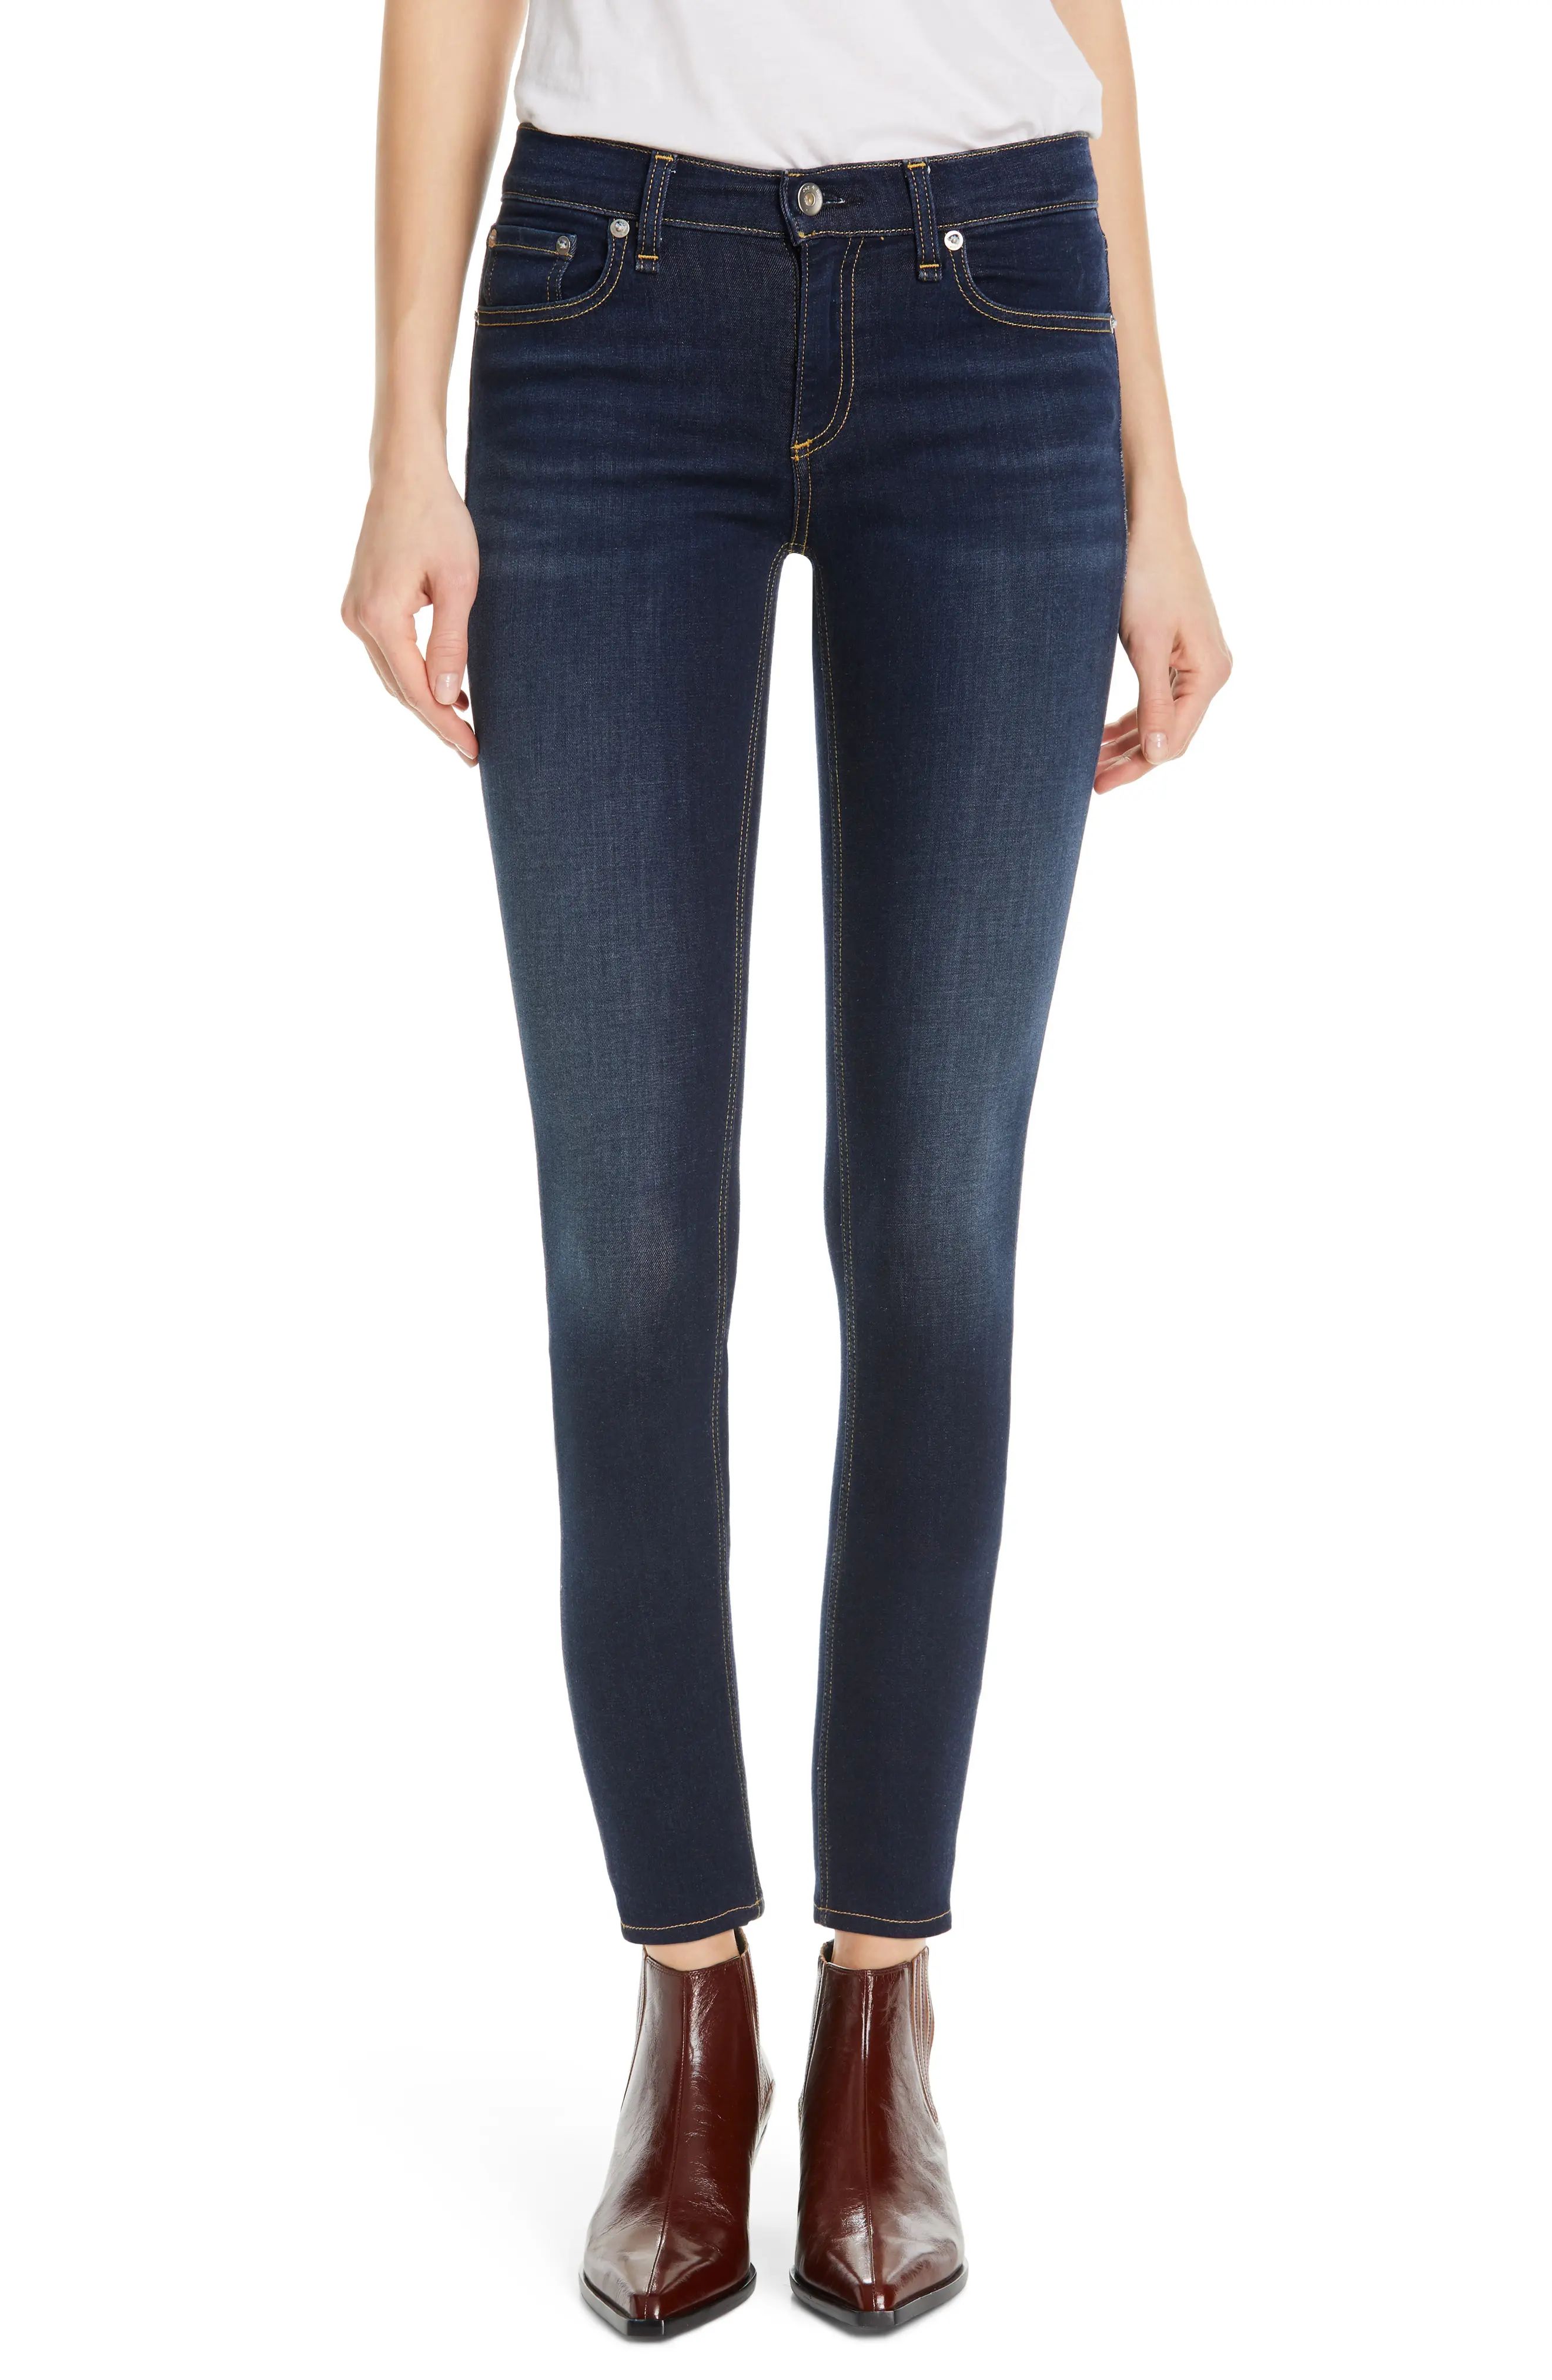 rag & bone Cate Ankle Skinny Jeans in Carmen at Nordstrom, Size 26 | Nordstrom